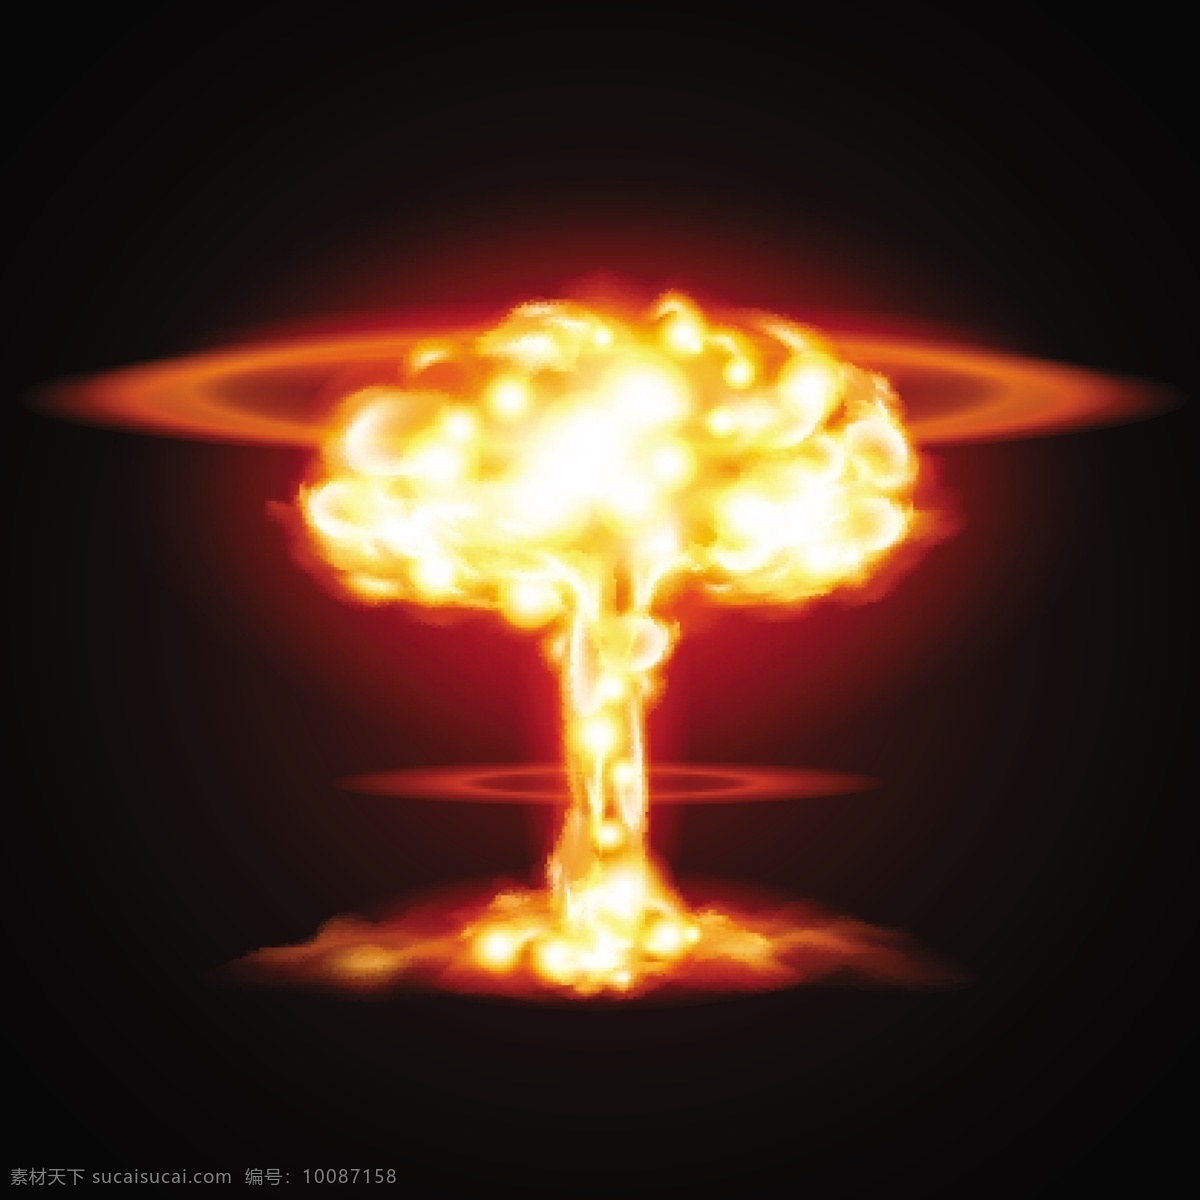 核弹 爆炸 毁灭 矢量 毁灭原子弹 核爆炸 炸弹 核武器 蘑菇 云 其它类别 黑色